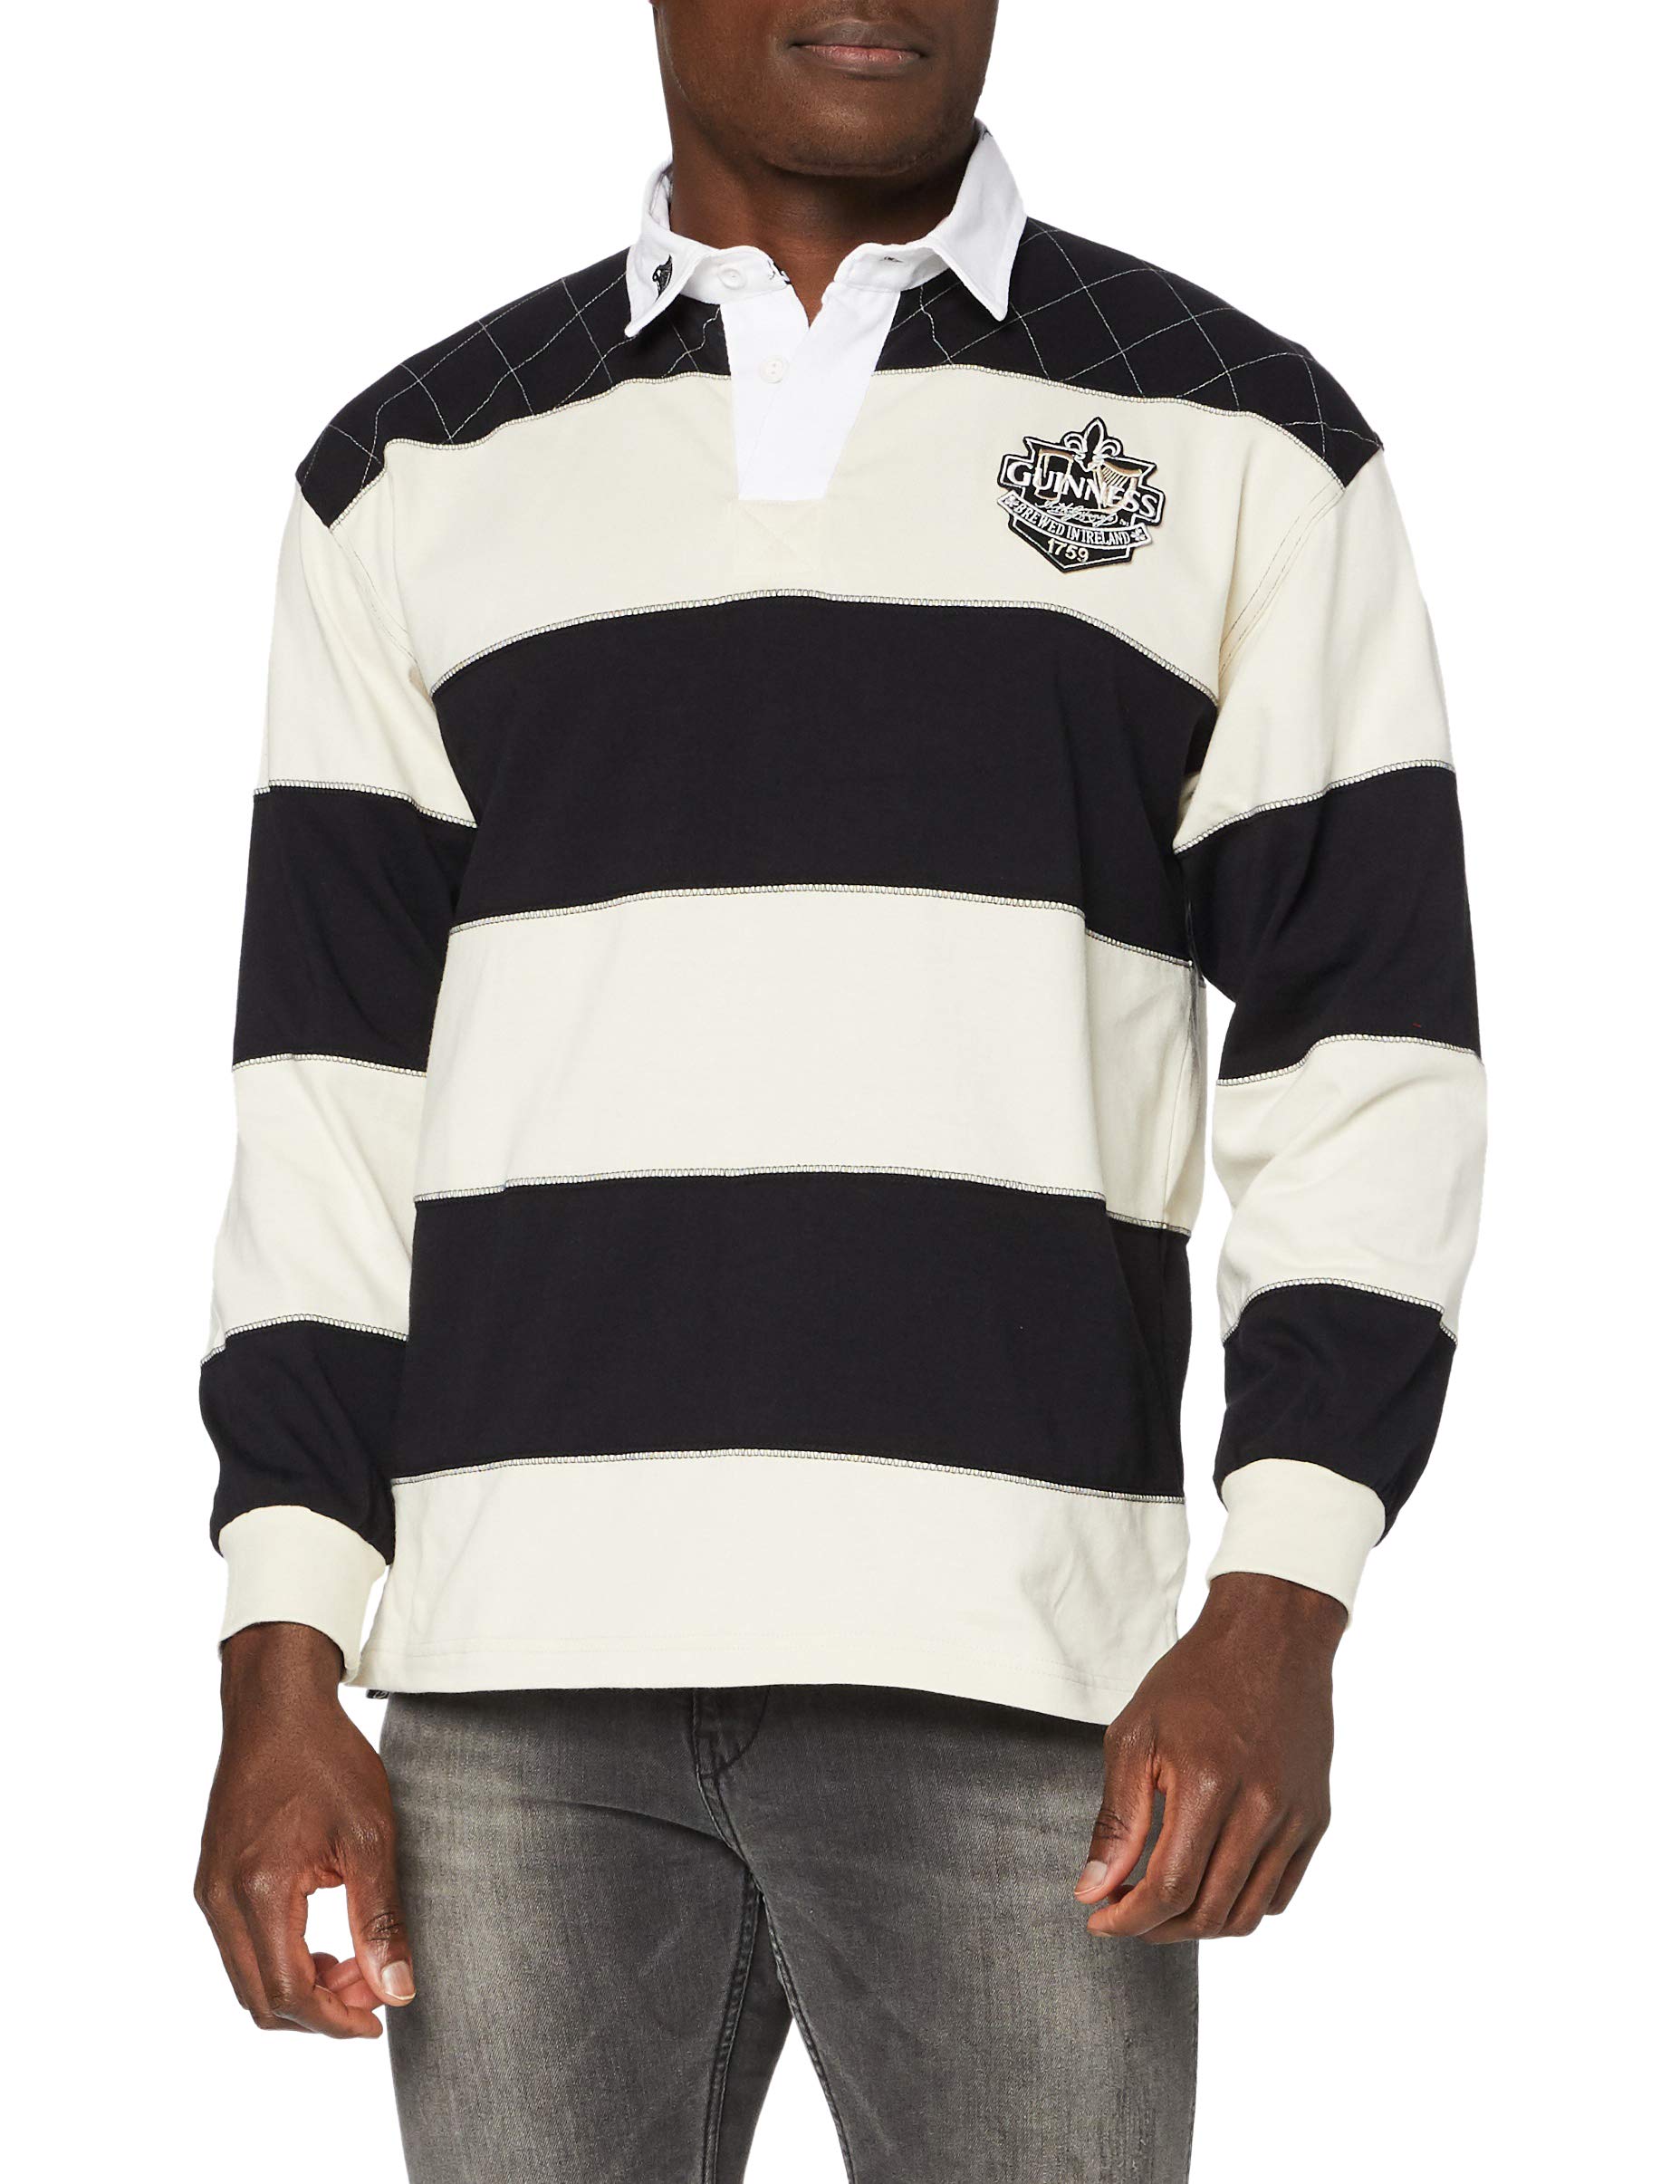 Guinness Official Merchandise Herren Shirt , Knopfleiste - Multicolored - Black/Cream - Medium